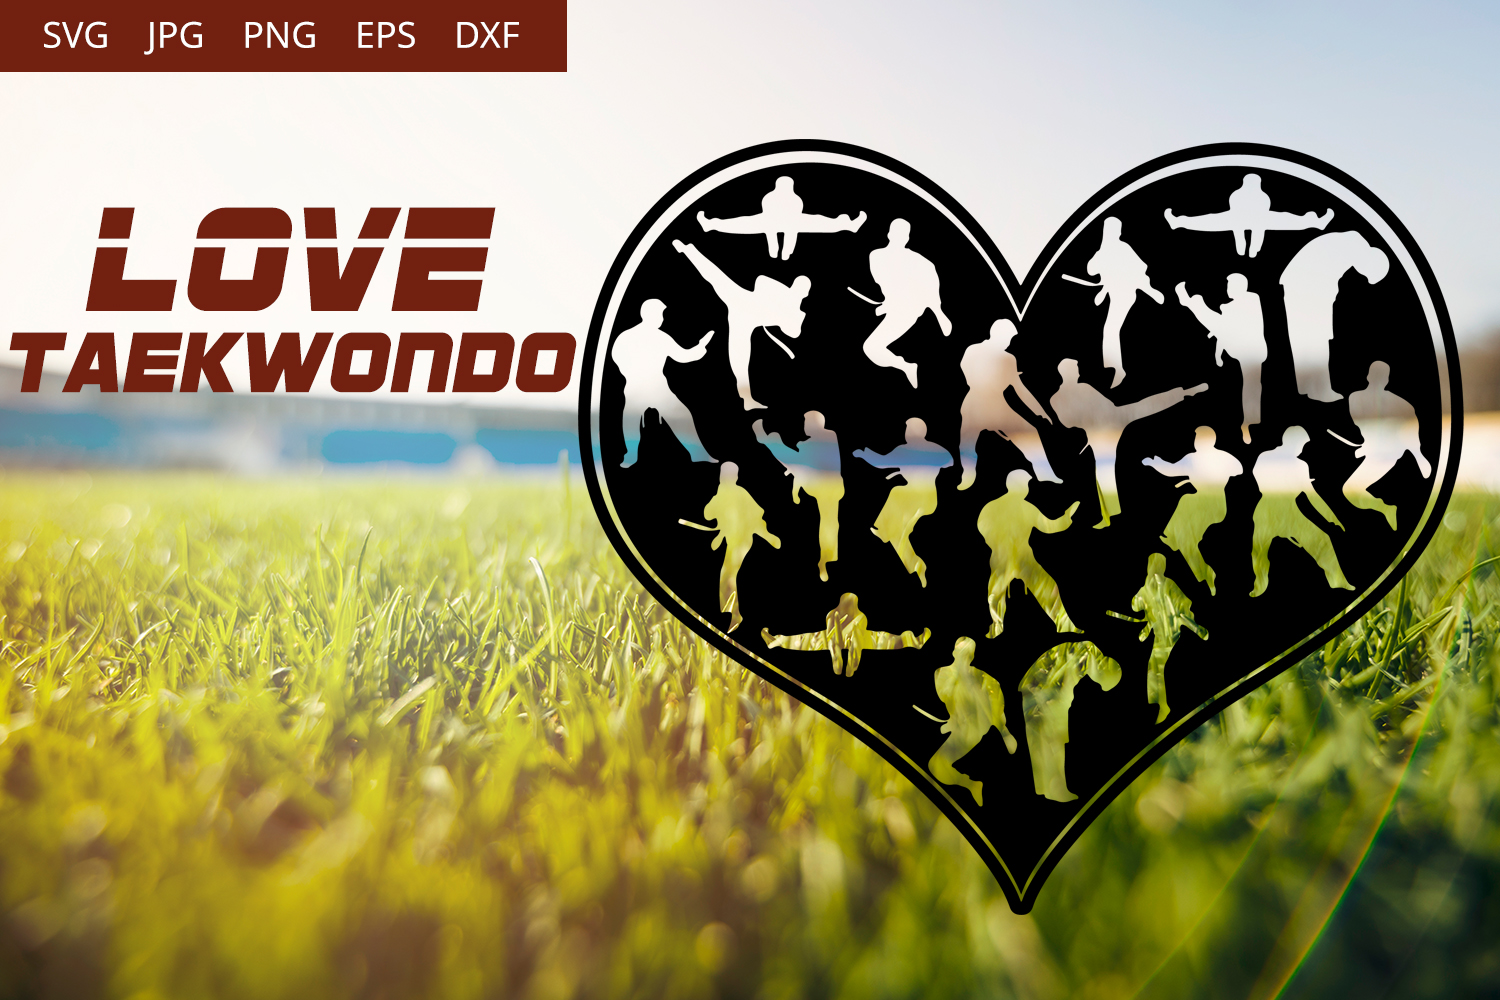 Free Free 110 Love Svg Monogram Maker SVG PNG EPS DXF File